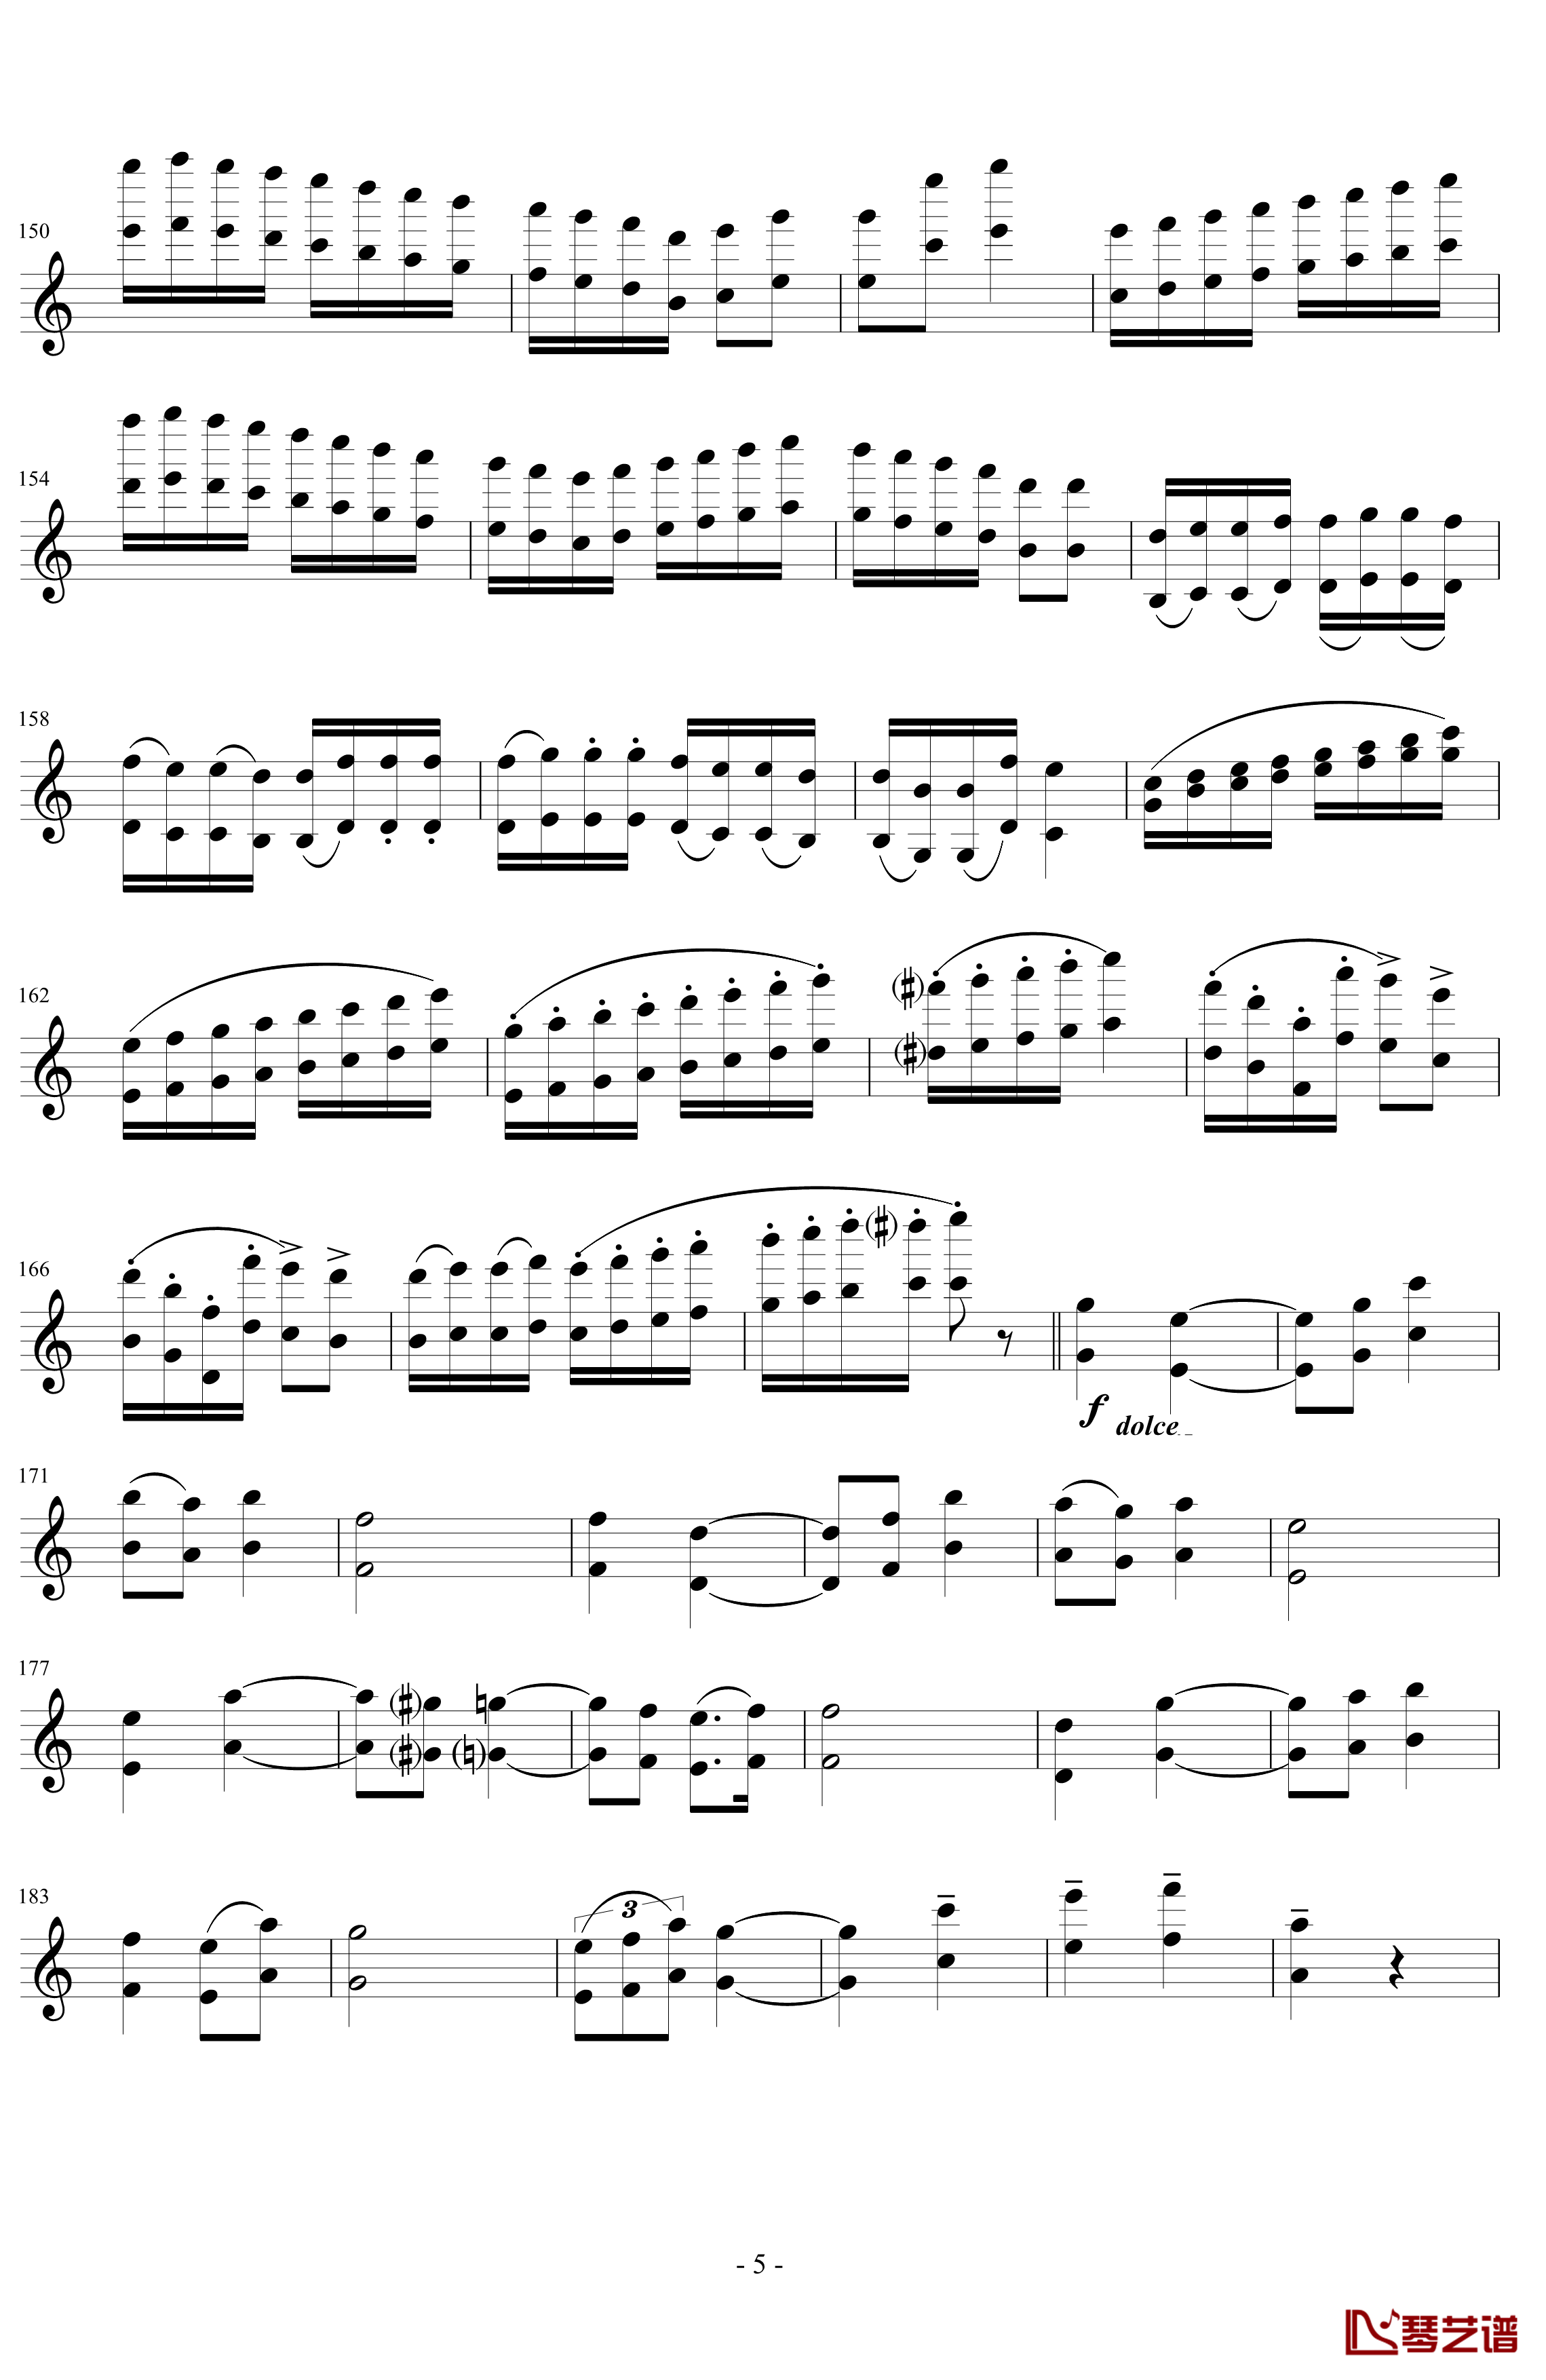 莫扎特主题炫技变奏曲钢琴谱-小提琴版-莫扎特5